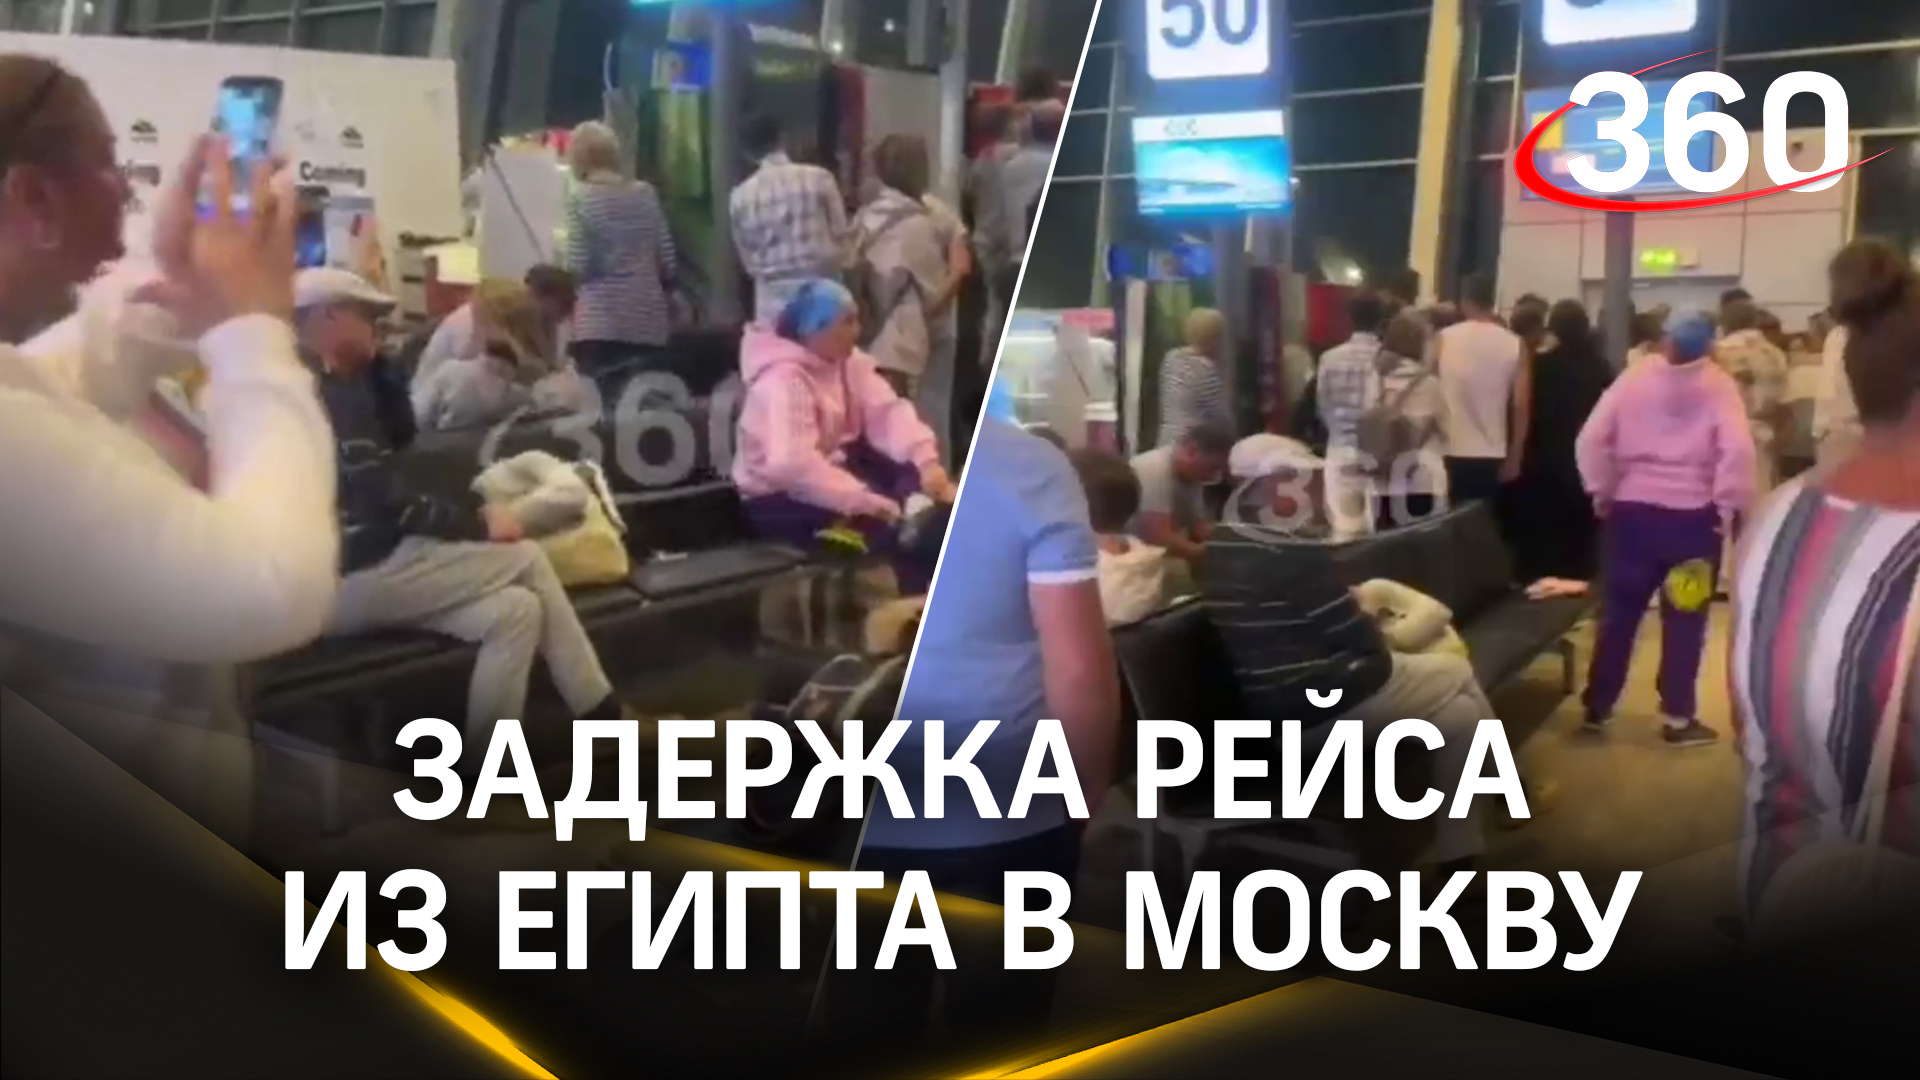 Около суток в аэропорту: российские туристы ждут вылета в Москву из Египта